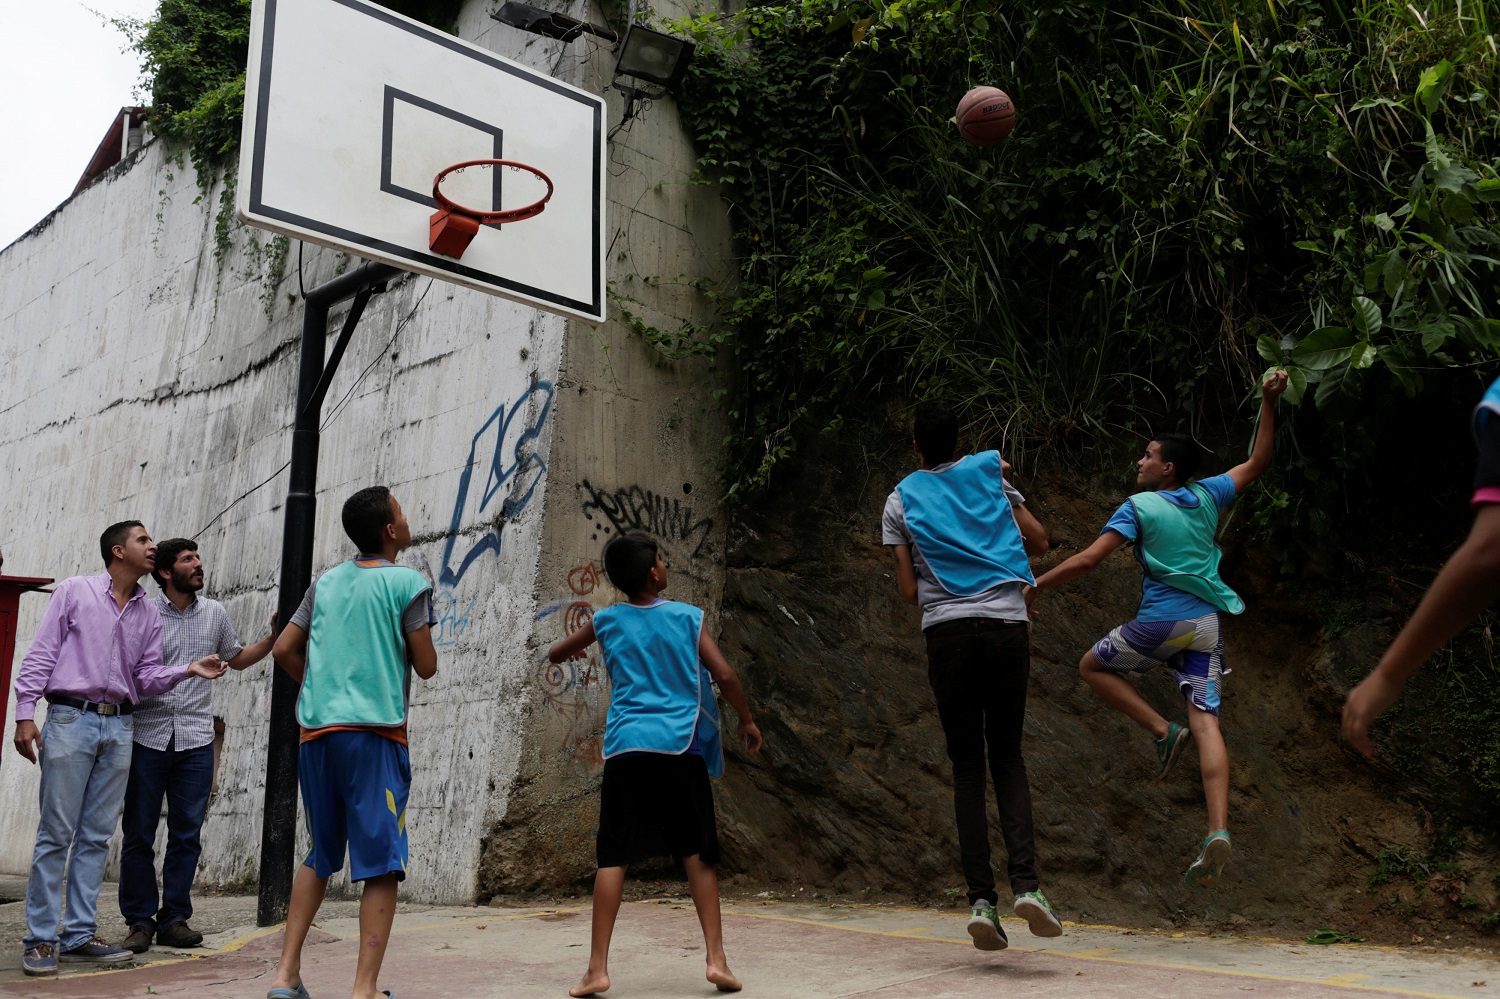 Los niños juegan al baloncesto durante un torneo organizado por partidarios de la oposición en el barrio de los 23 de Enero en Caracas, Venezuela, el 19 de mayo de 2017. Foto tomada el 19 de mayo de 2017. REUTERS / Marco Bello